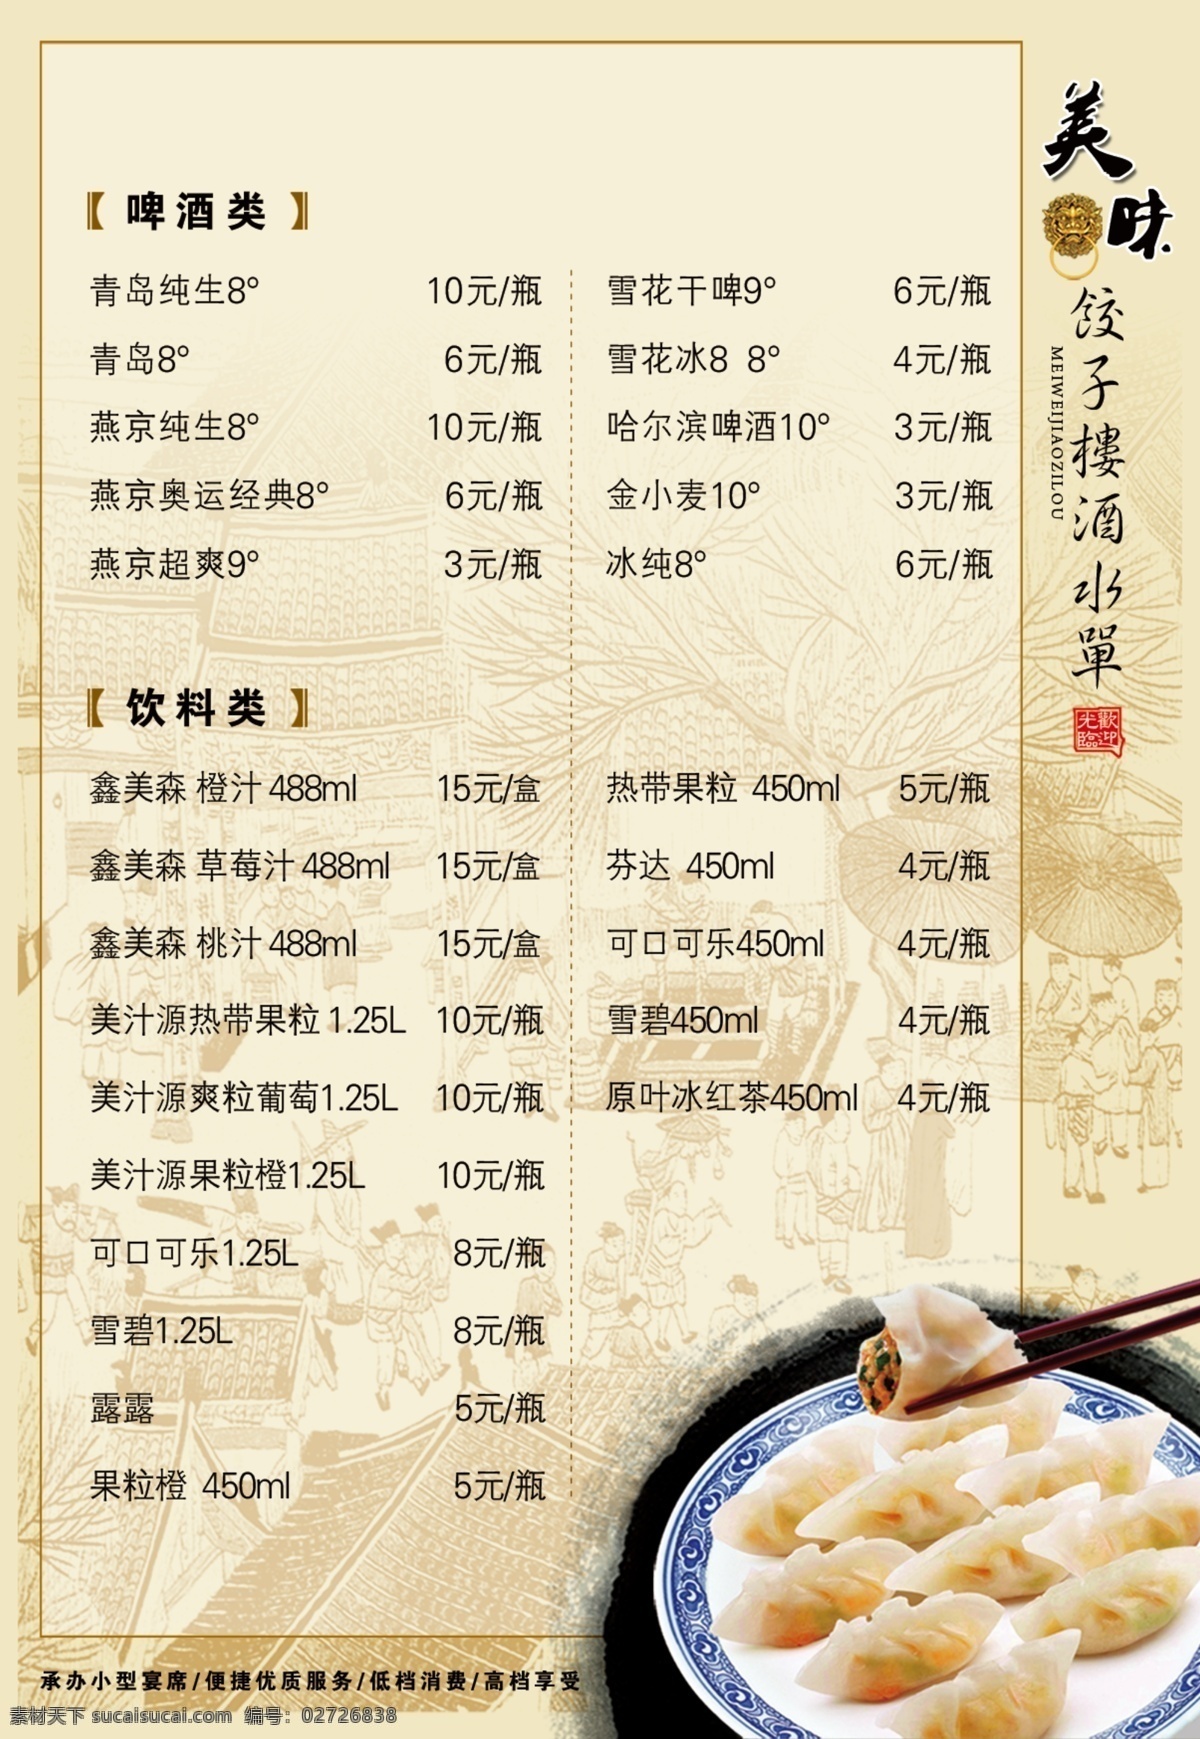 酒水单 饺子 酒水牌 菜谱 菜单 菜单菜谱 广告设计模板 源文件